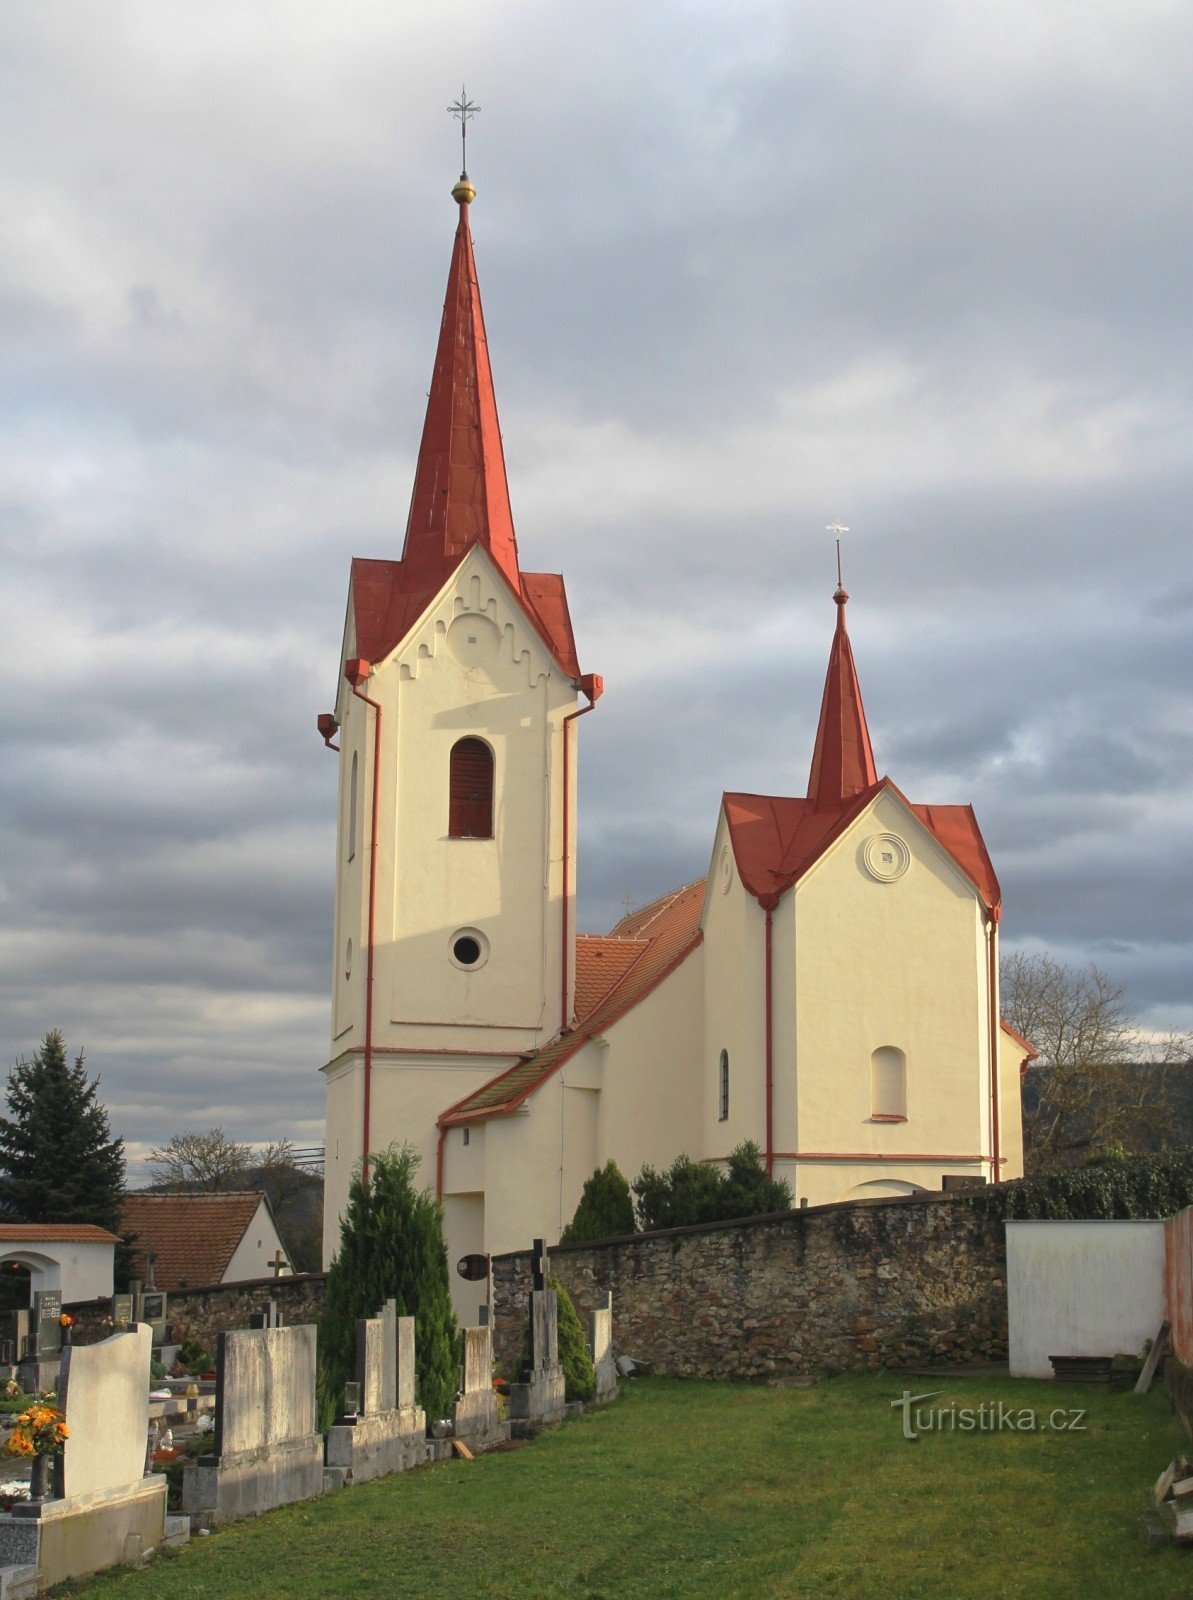 Újezd ​​Tišnov közelében - a Szent István-templom. Liliom